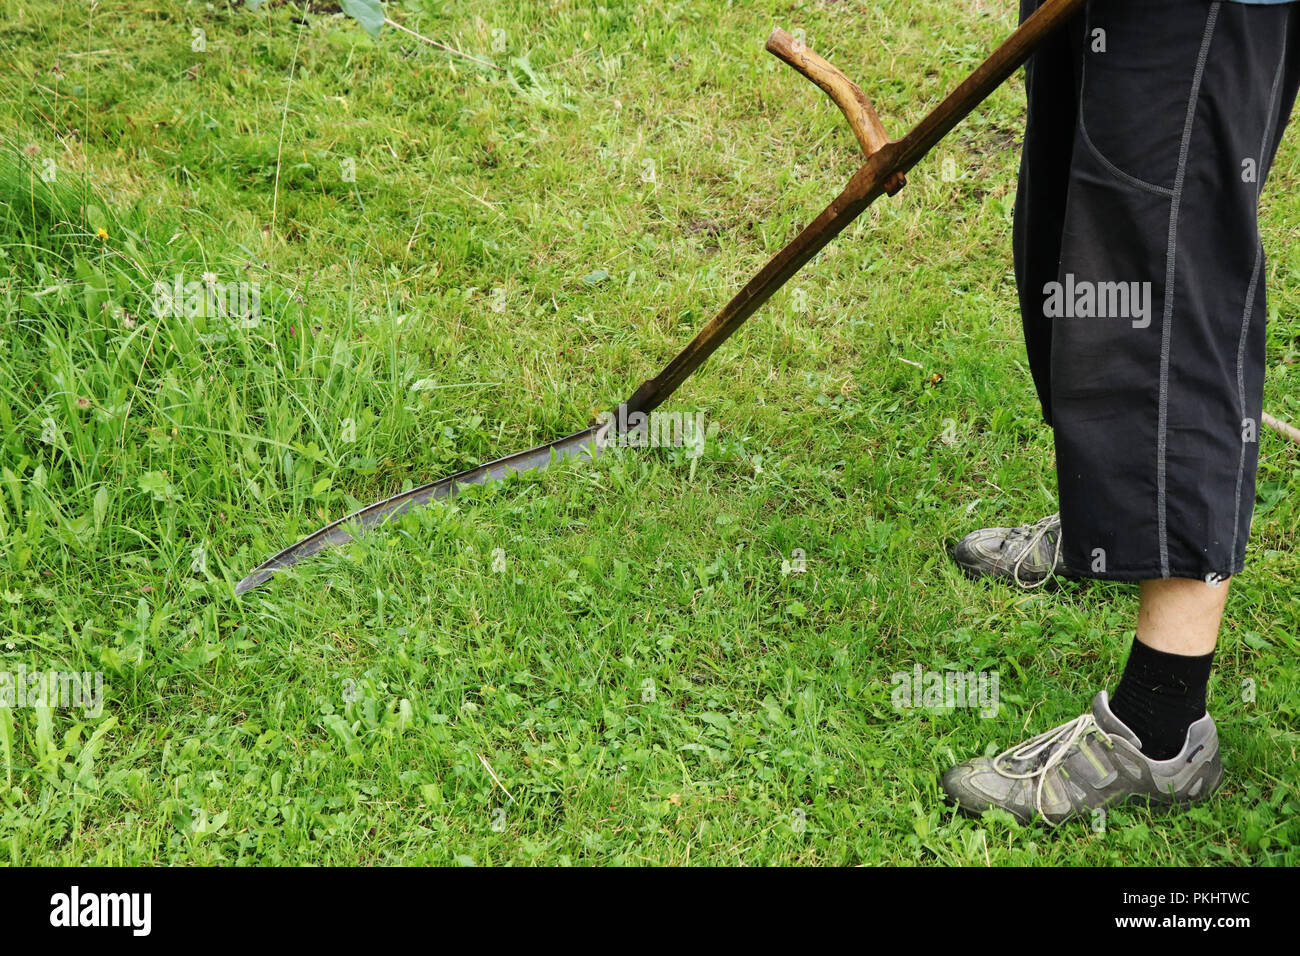 Ein Mann ein Gras mähen mit der Sense. Dieses Werkzeug ist aus Holz und Stahl Kante zusammenbauen. Sommer job Stockfoto